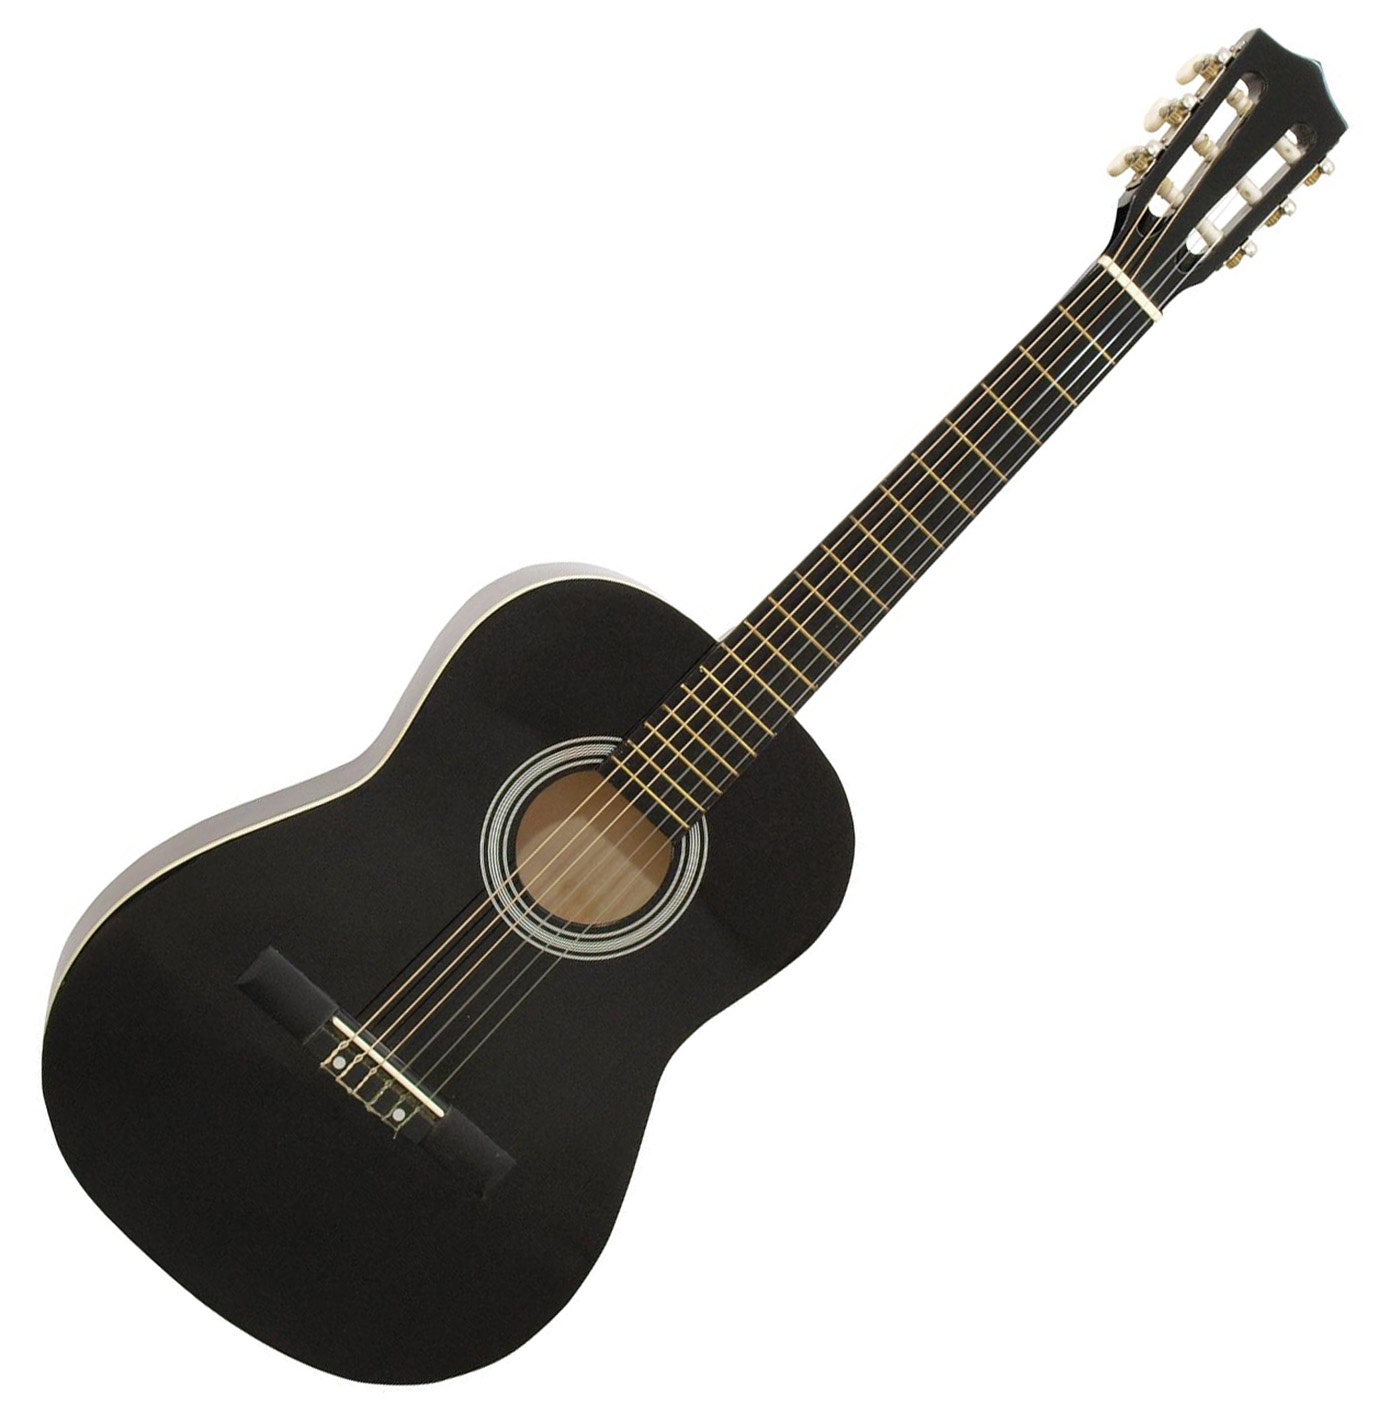 Se DiMavery AC-303 Klassisk Spansk Guitar 3/4 (Sort) hos SoundStoreXL.dk